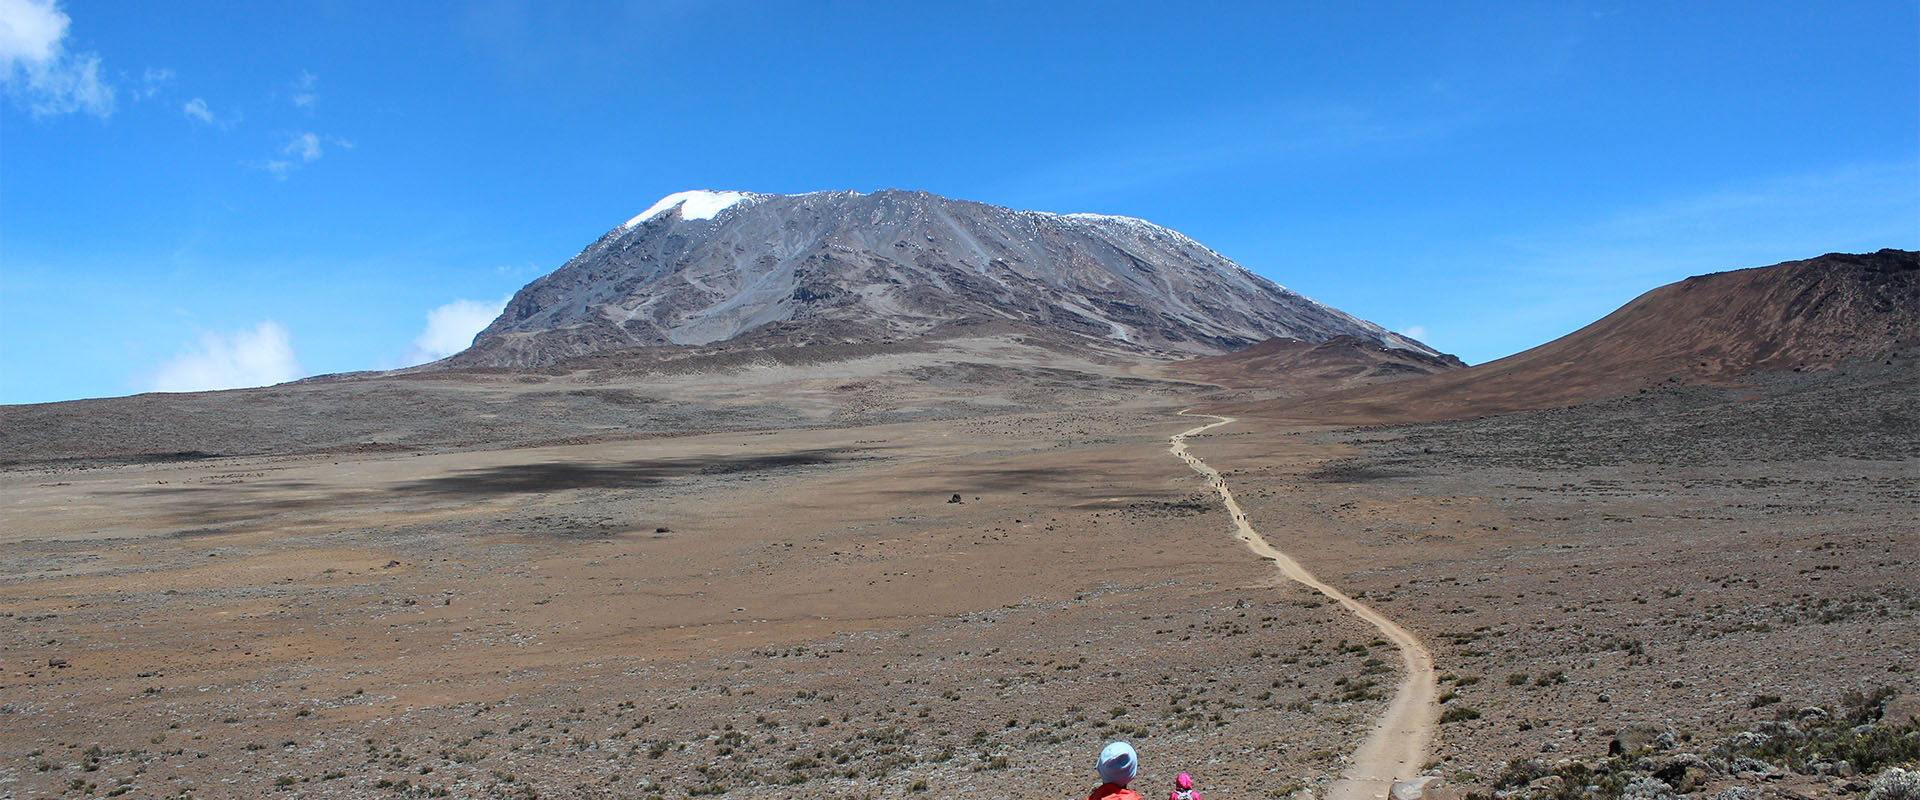 Wanderer auf dem Weg zum Kilimandscharo